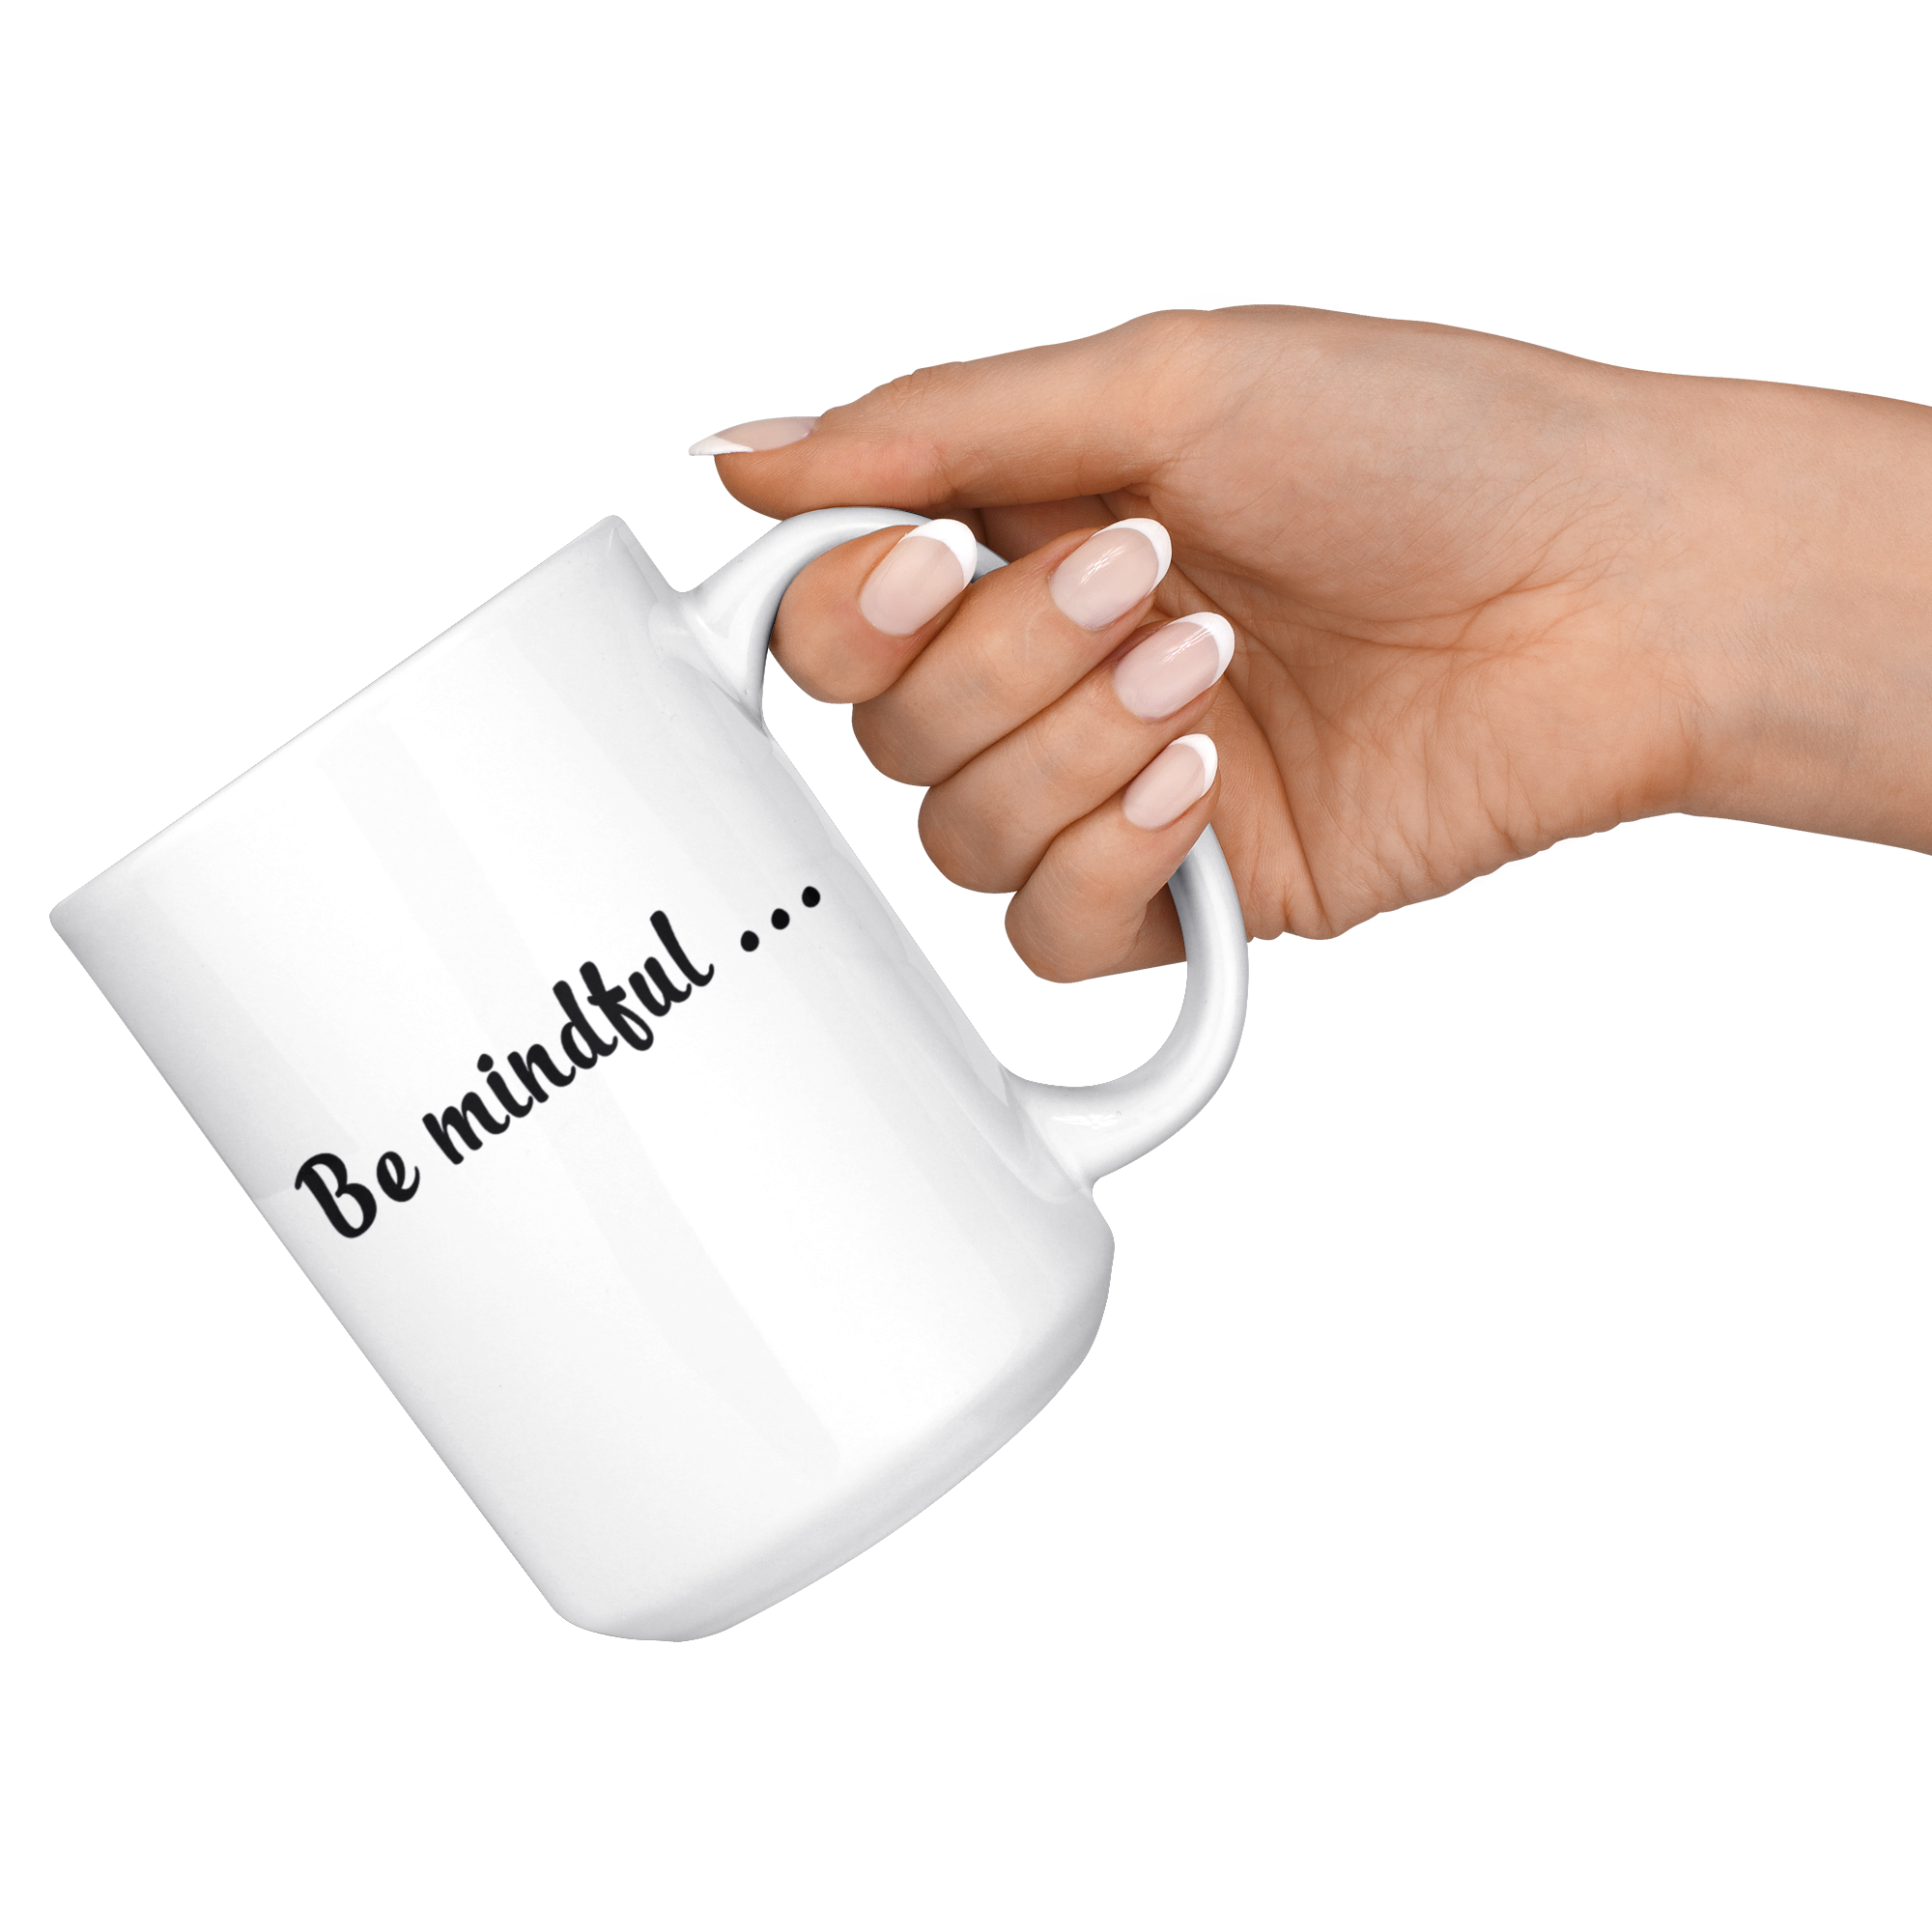 Be mindful Mug - White 11oz Coffee Mug - Recently Done Custom Orders - PrintsBee